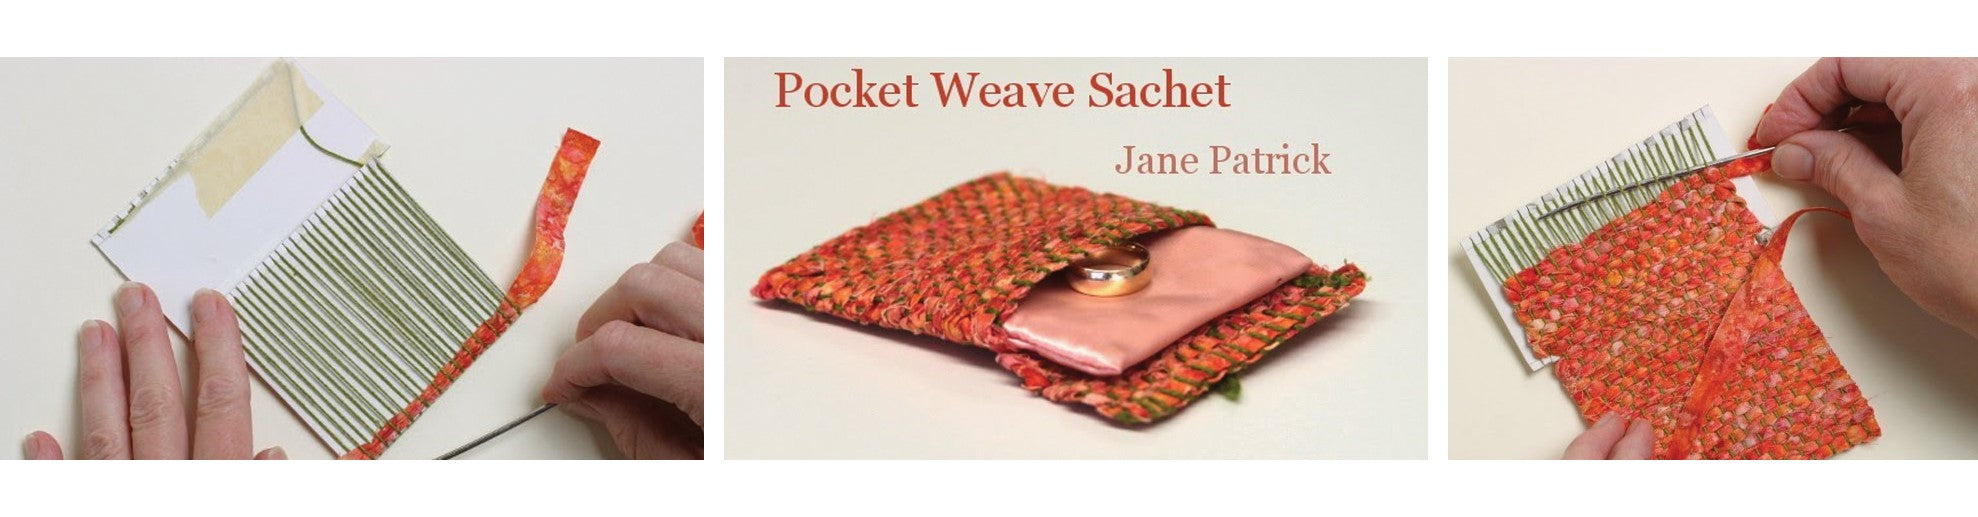 Pocket Weave Sachet